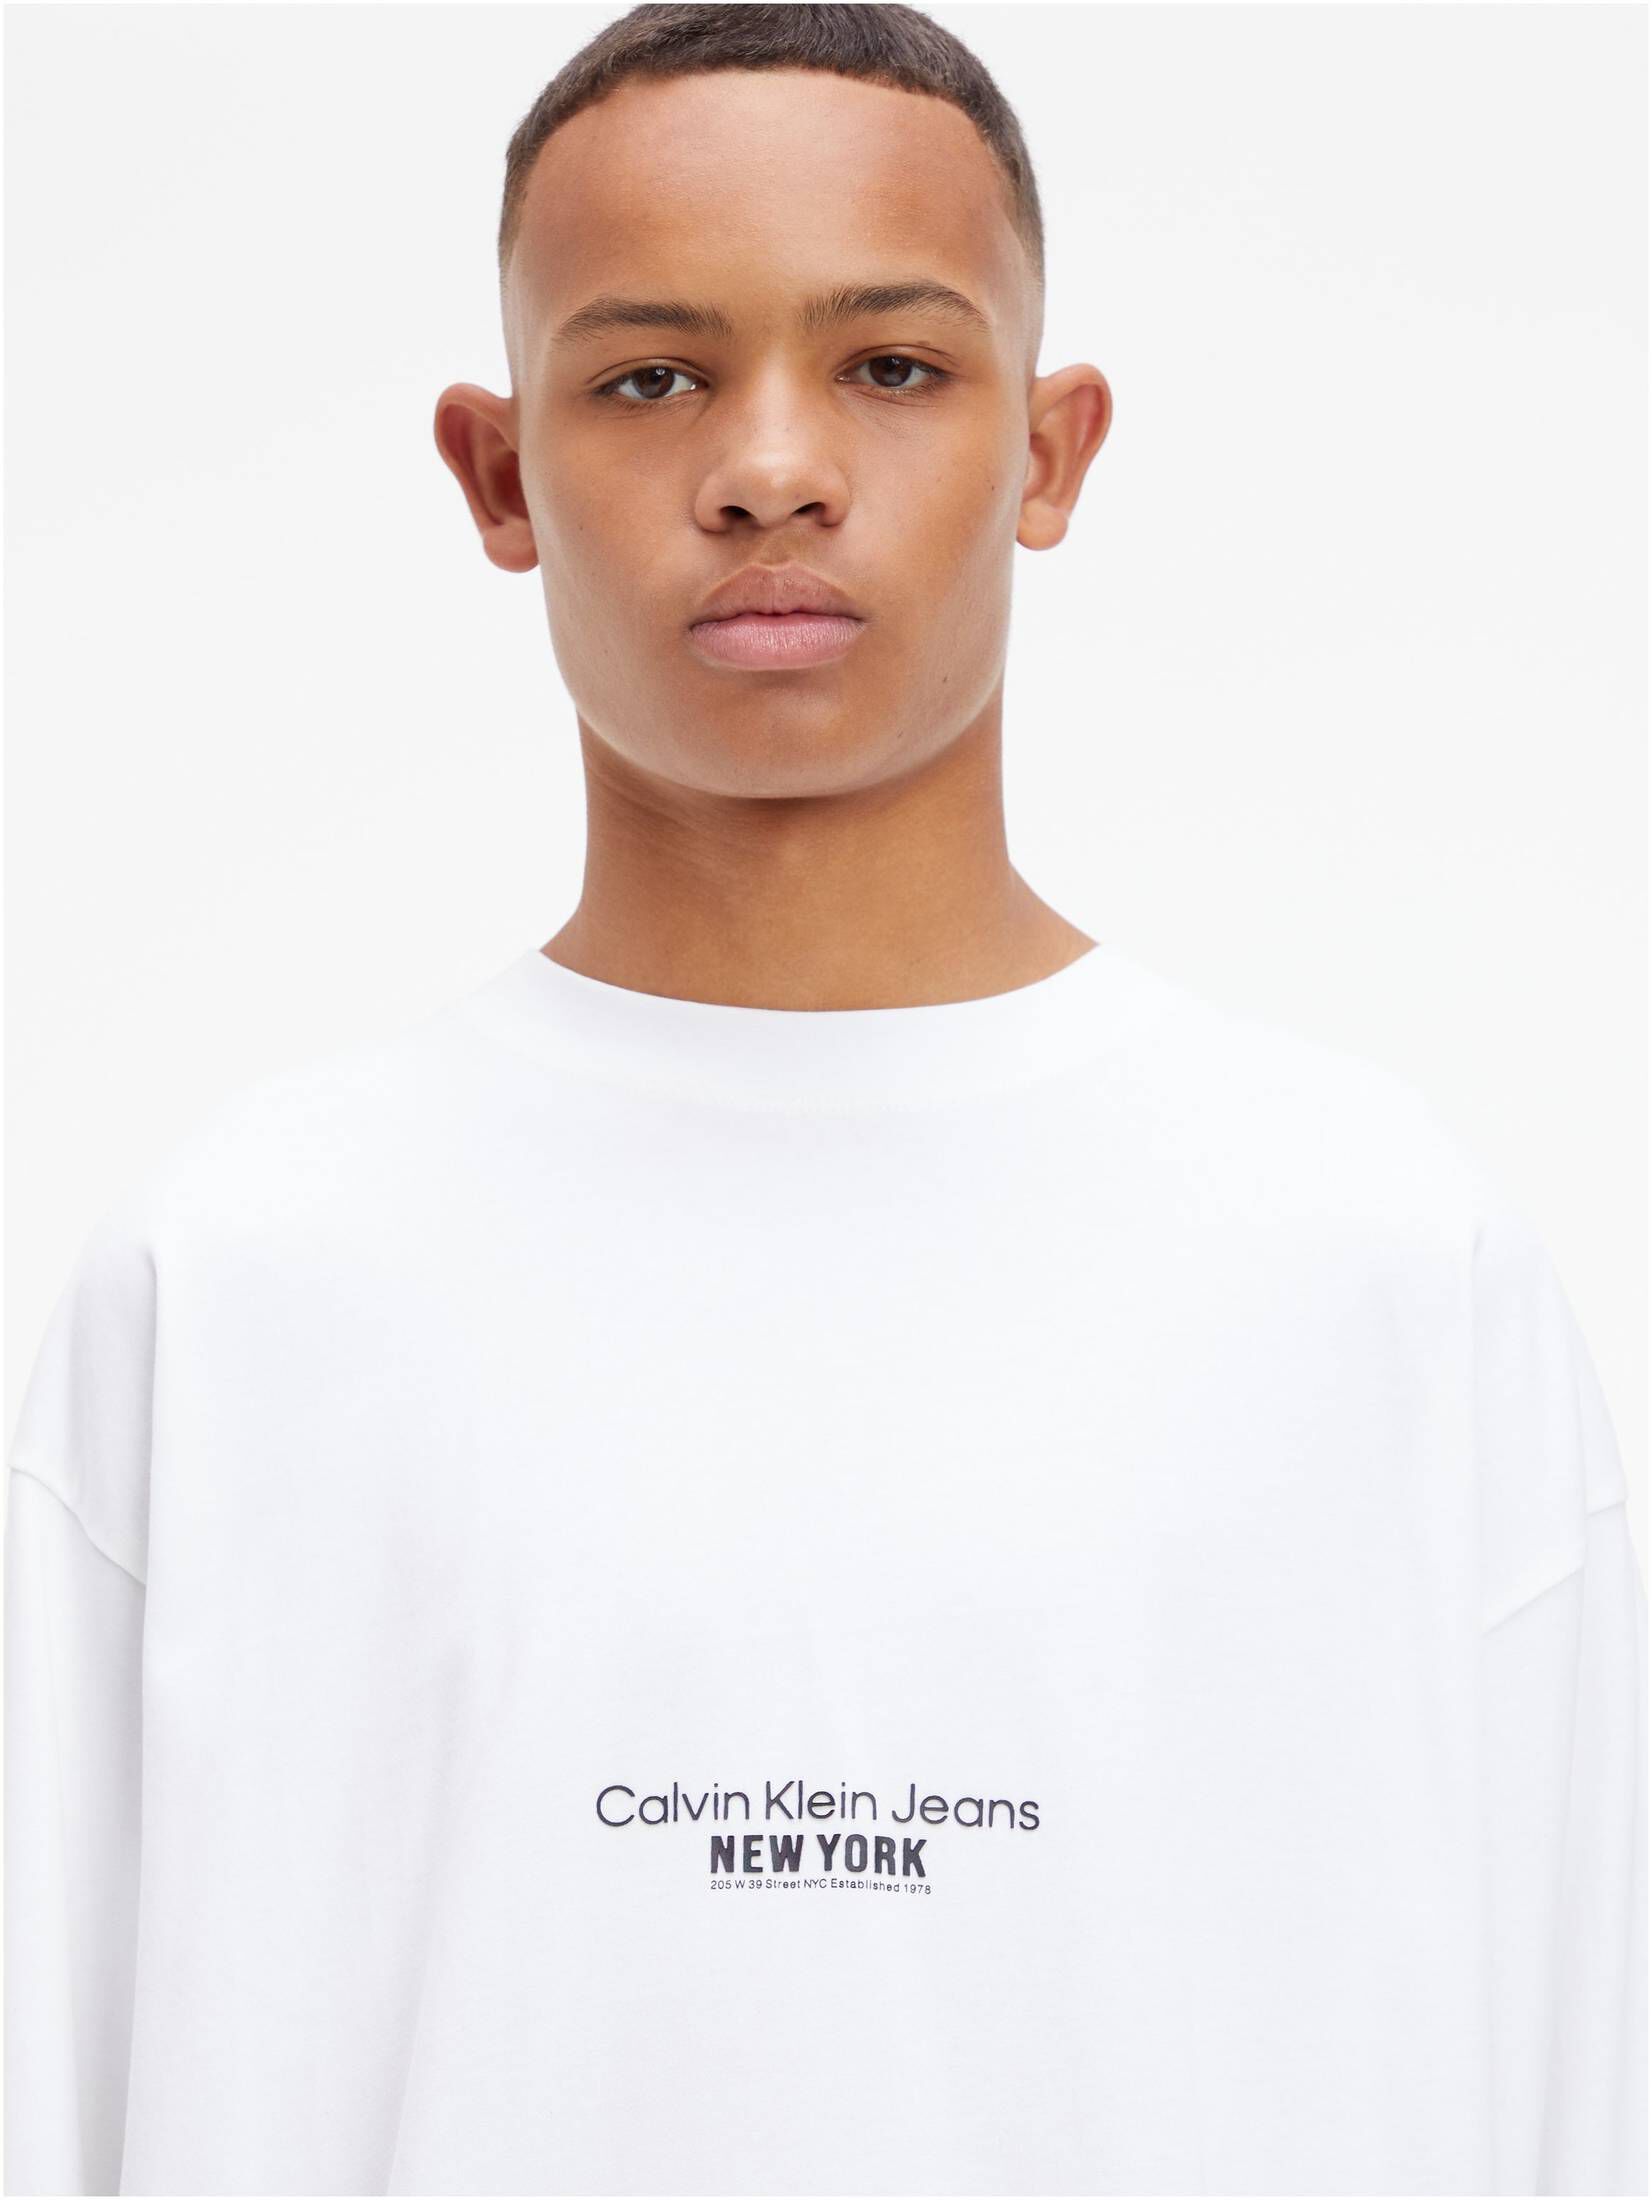 Calvin Klein Jeans Men's Motion Floral Graphic T-Shirt